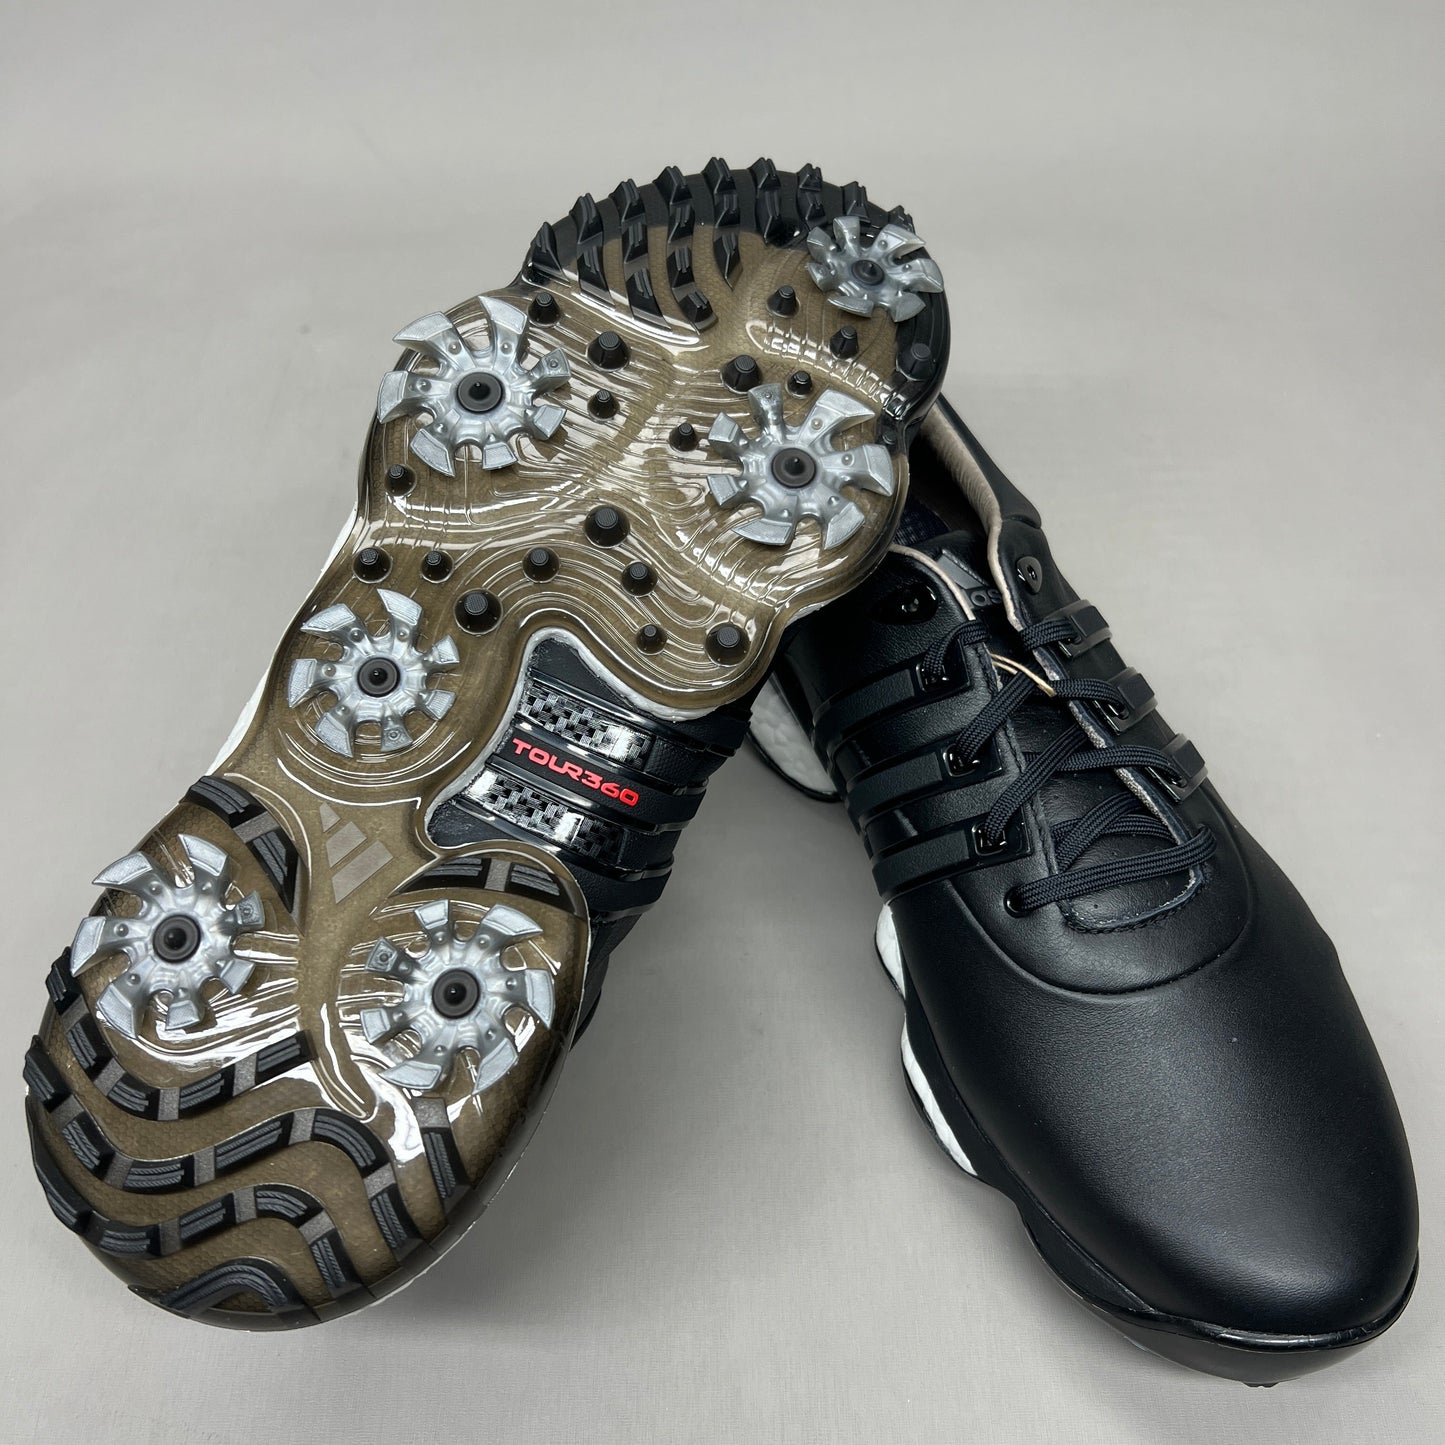 ADIDAS Golf Shoes TOUR360 22 Leather Men's Sz 12.5 Black / Iron Metallic GZ3158 (New)